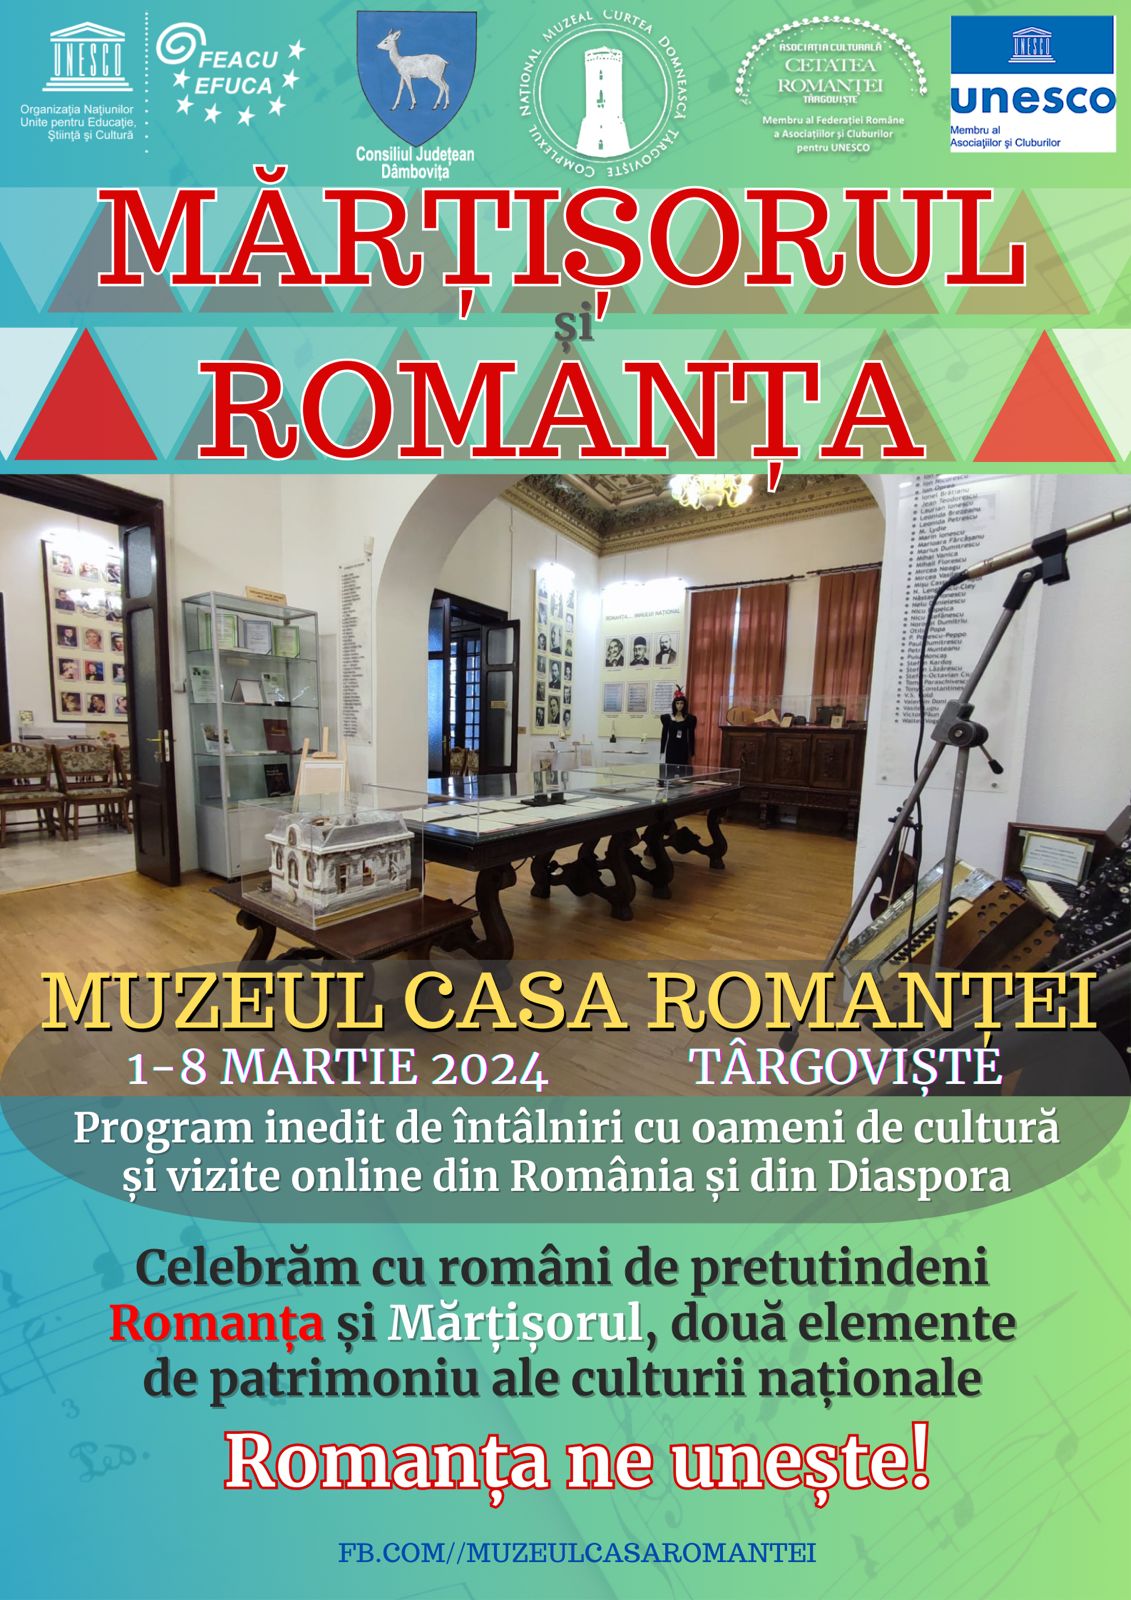 Festivalul Naţional de Interpretare şi Creaţie a Romanţei „Crizantema de Aur”, ediţia a 56-a, 2023